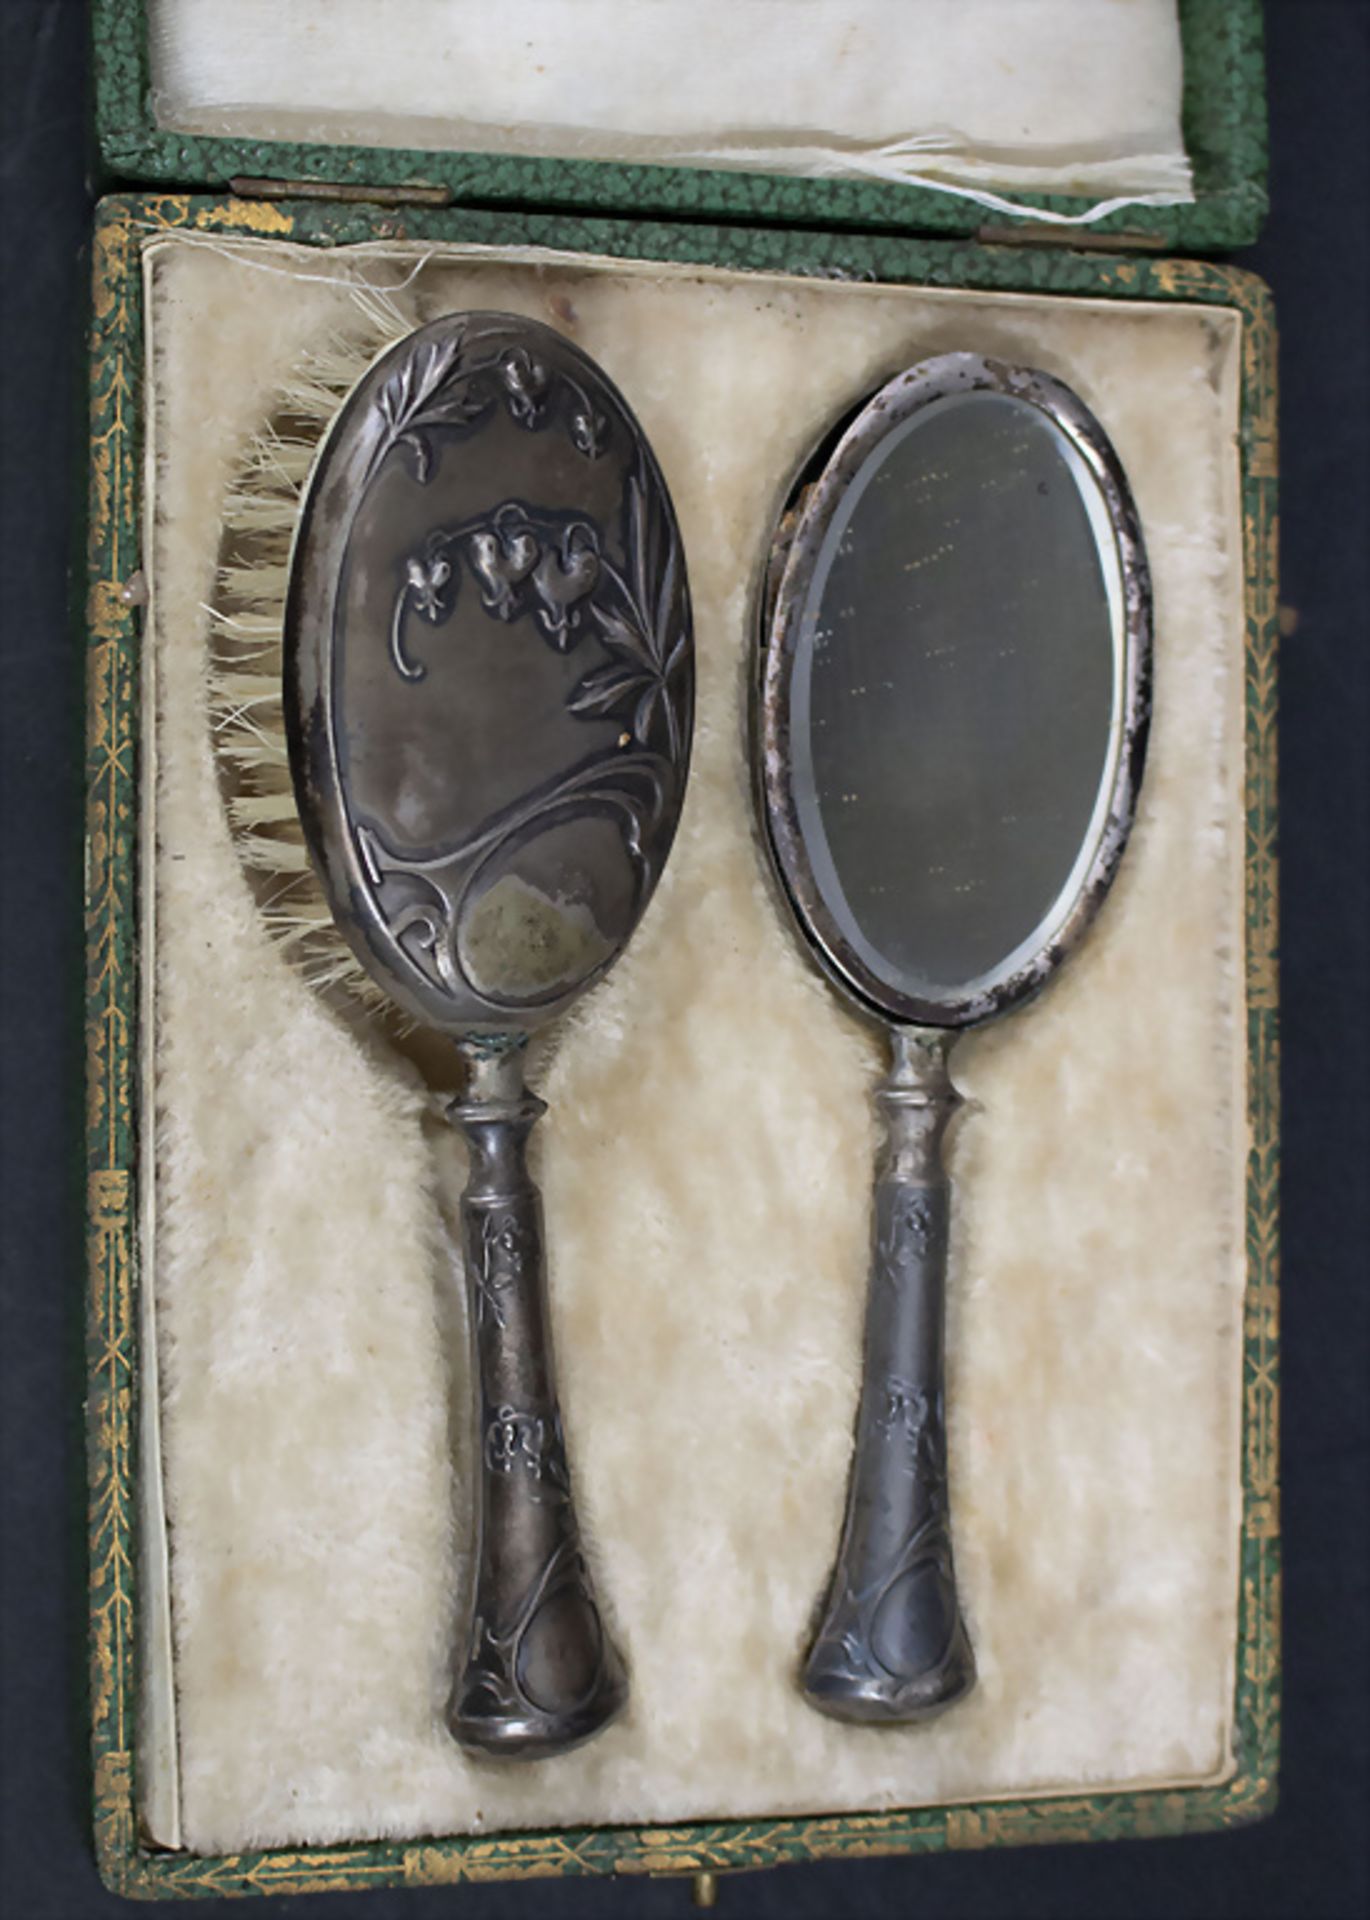 Puppen Jugendstil Handspiegel und Haarbürste im Etui / A doll's Art Nouveau silver mirror and ... - Bild 2 aus 2